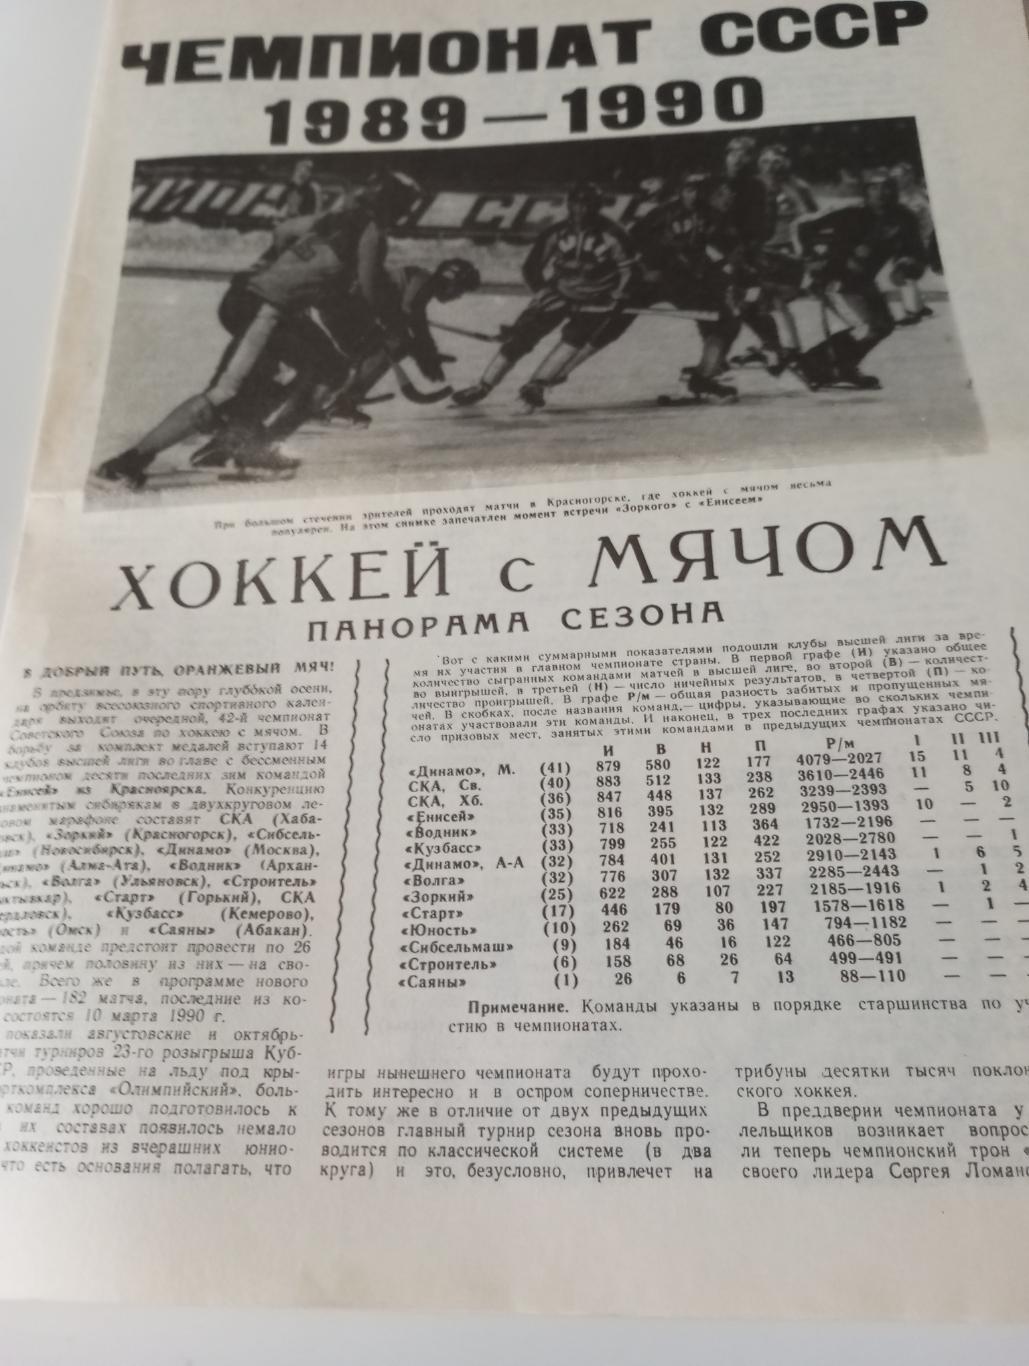 Чемпионат СССР 1989/1990 - Хоккей с мячом (Панорама сезона)